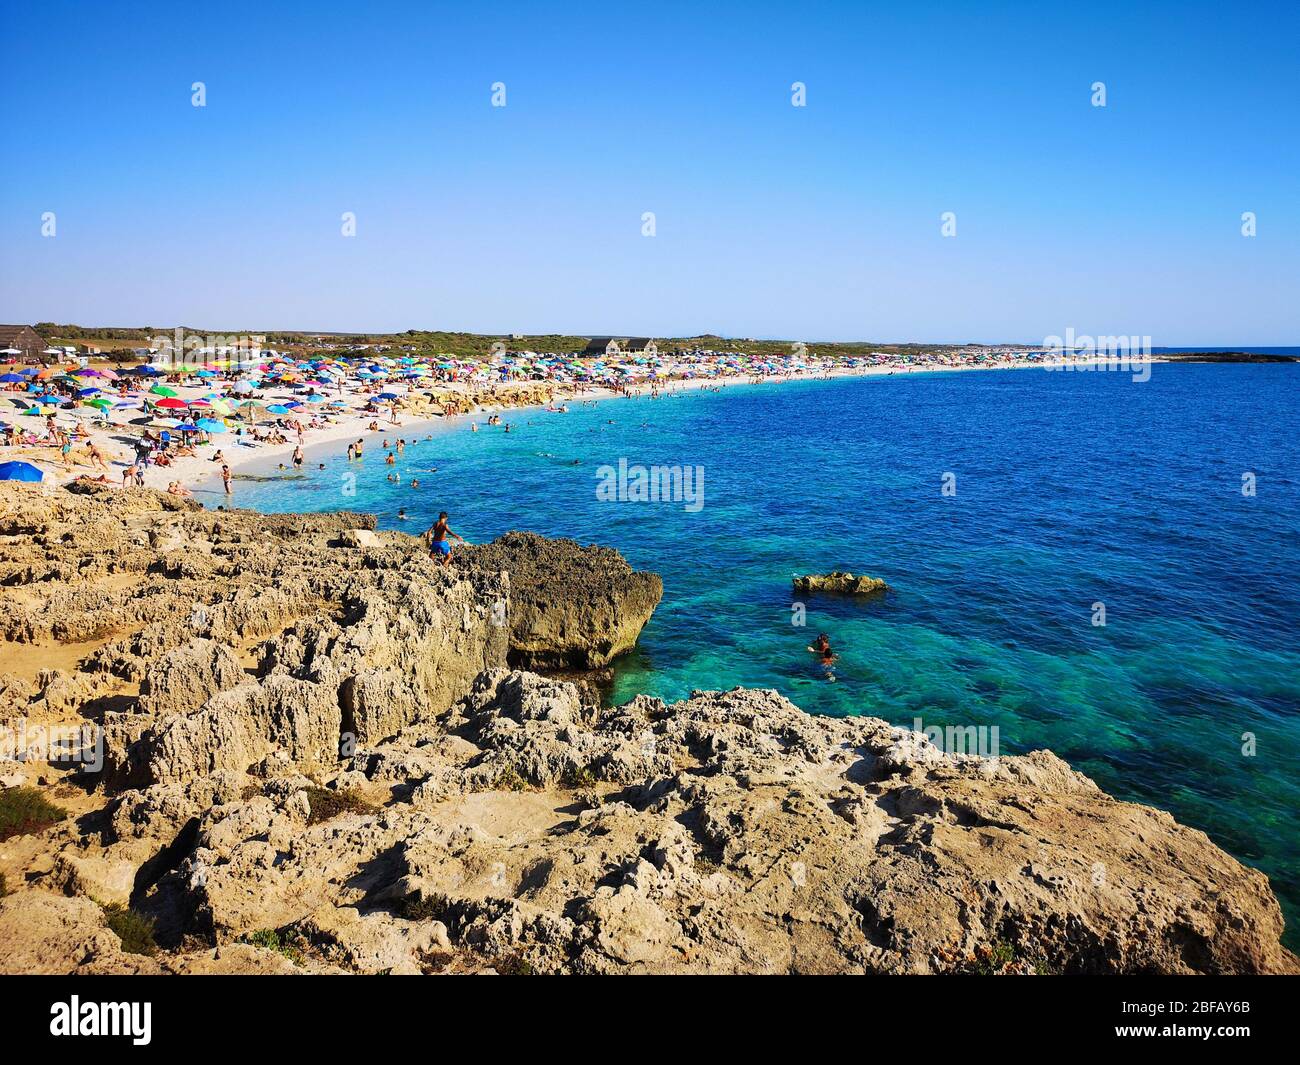 Villasimius, Italy - August 14, 2017: Transparent and turquoise sea in Villasimius. Sardinia, Italy. Stock Photo